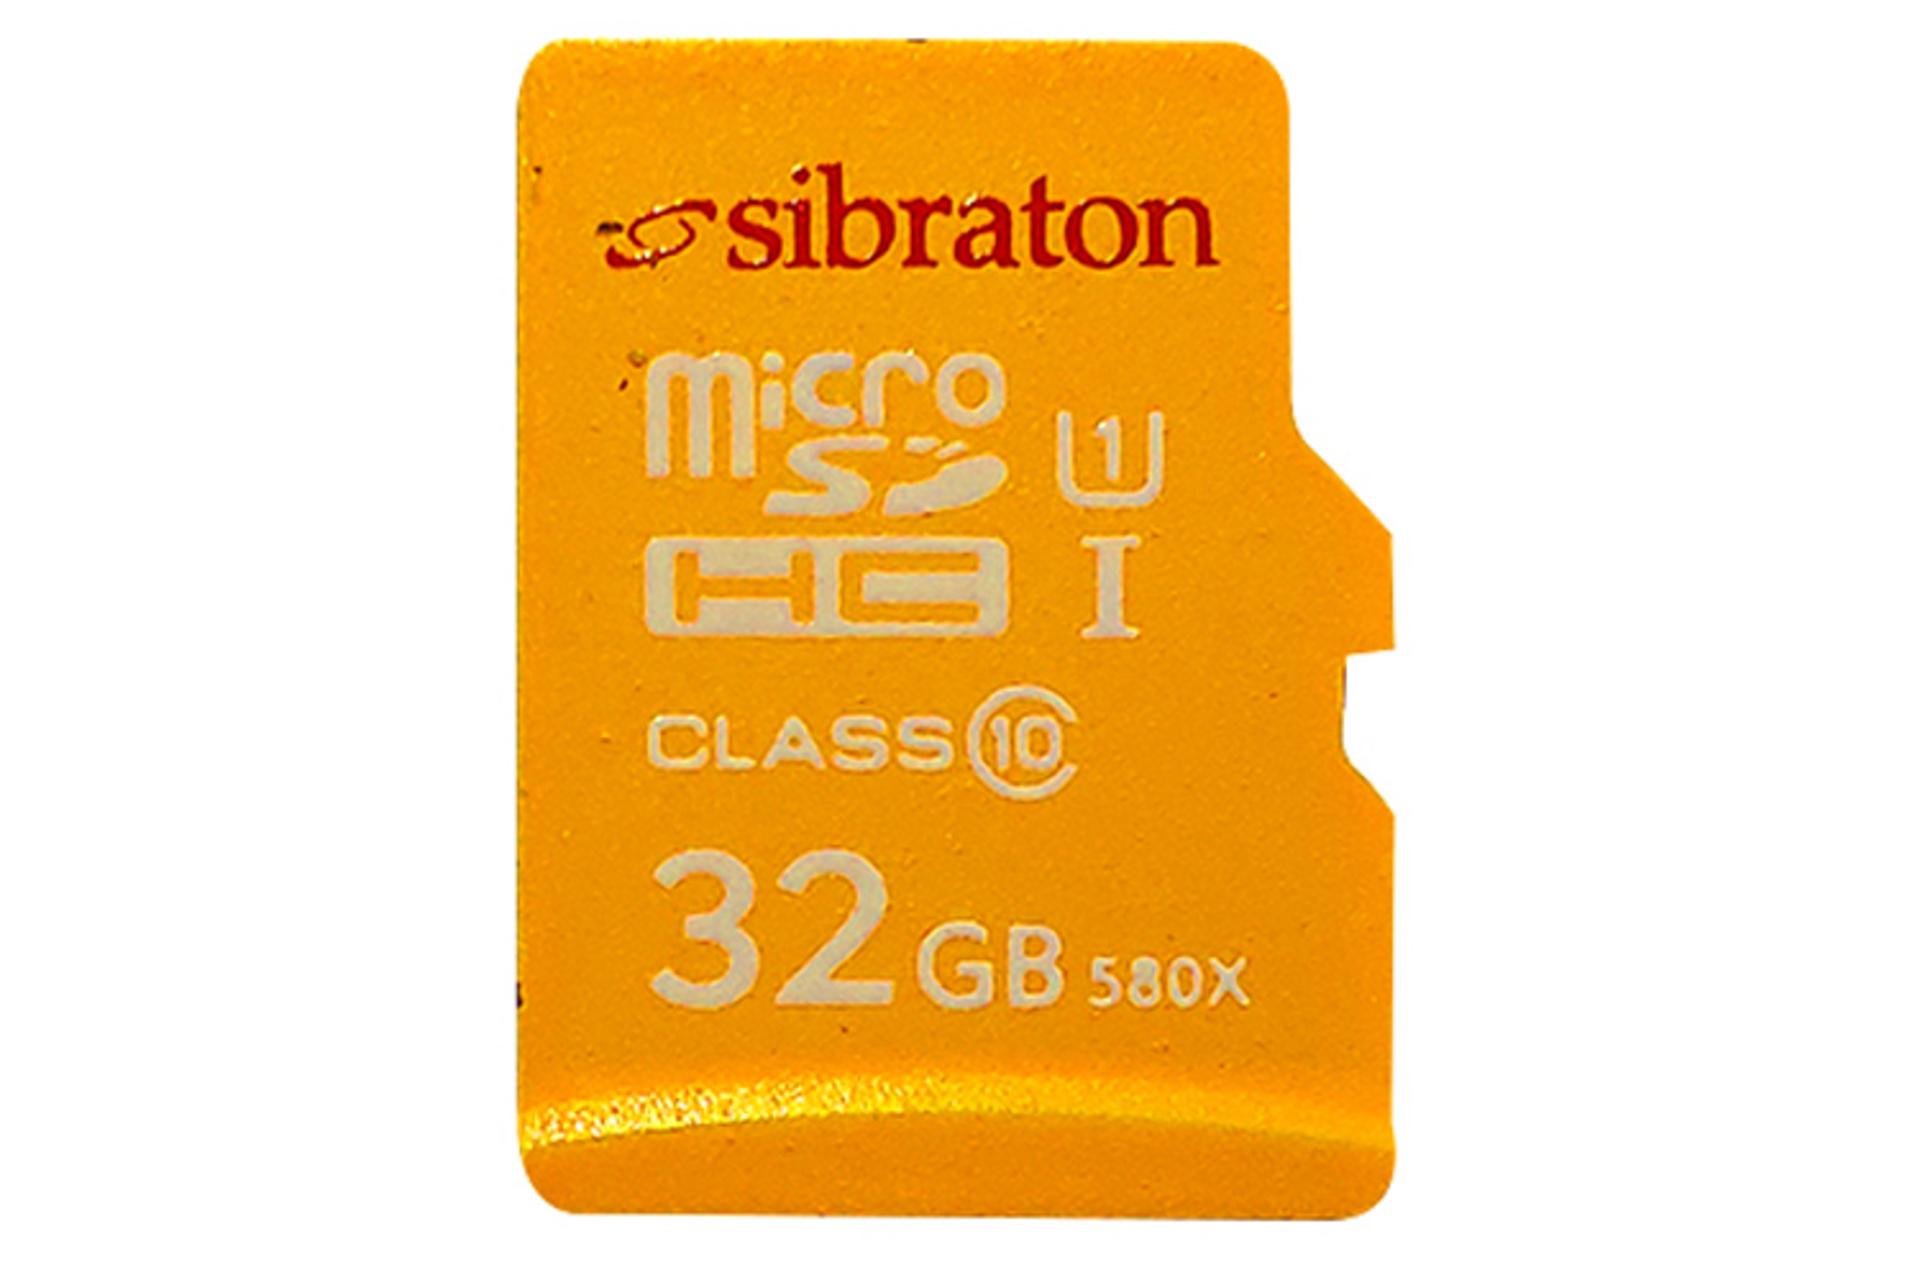 کارت حافظه سیبراتون microSDHC با ظرفیت 32 گیگابایت مدل 580x